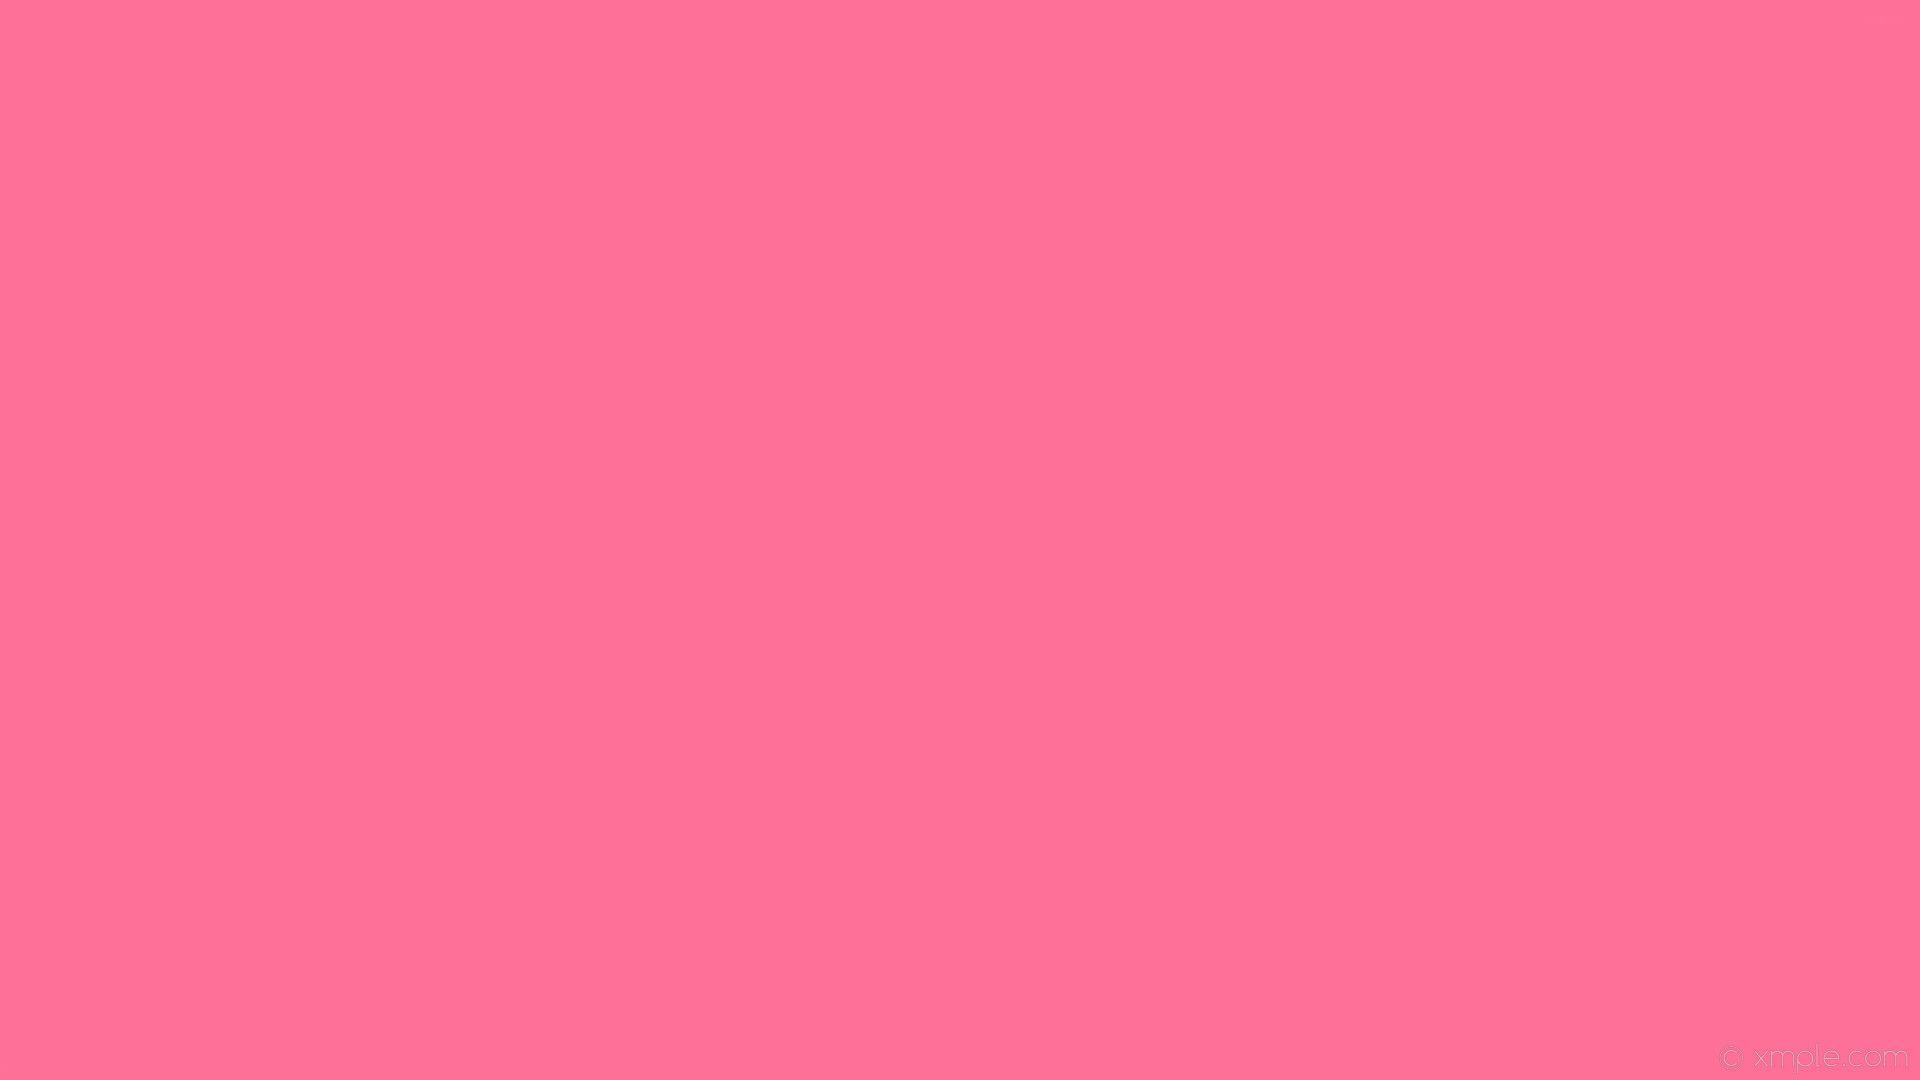 Hình nền màu hồng đơn sắc là lựa chọn hoàn hảo để tạo ra những trang trí đơn giản và tinh tế. Gam màu này mang đến sự nữ tính, ngọt ngào nhưng không kém phần sang trọng, thích hợp cho bất kỳ loại ứng dụng, thiết kế nào. Tải ngay những hình ảnh liên quan để sở hữu những hình nền màu hồng đơn sắc tuyệt đẹp.